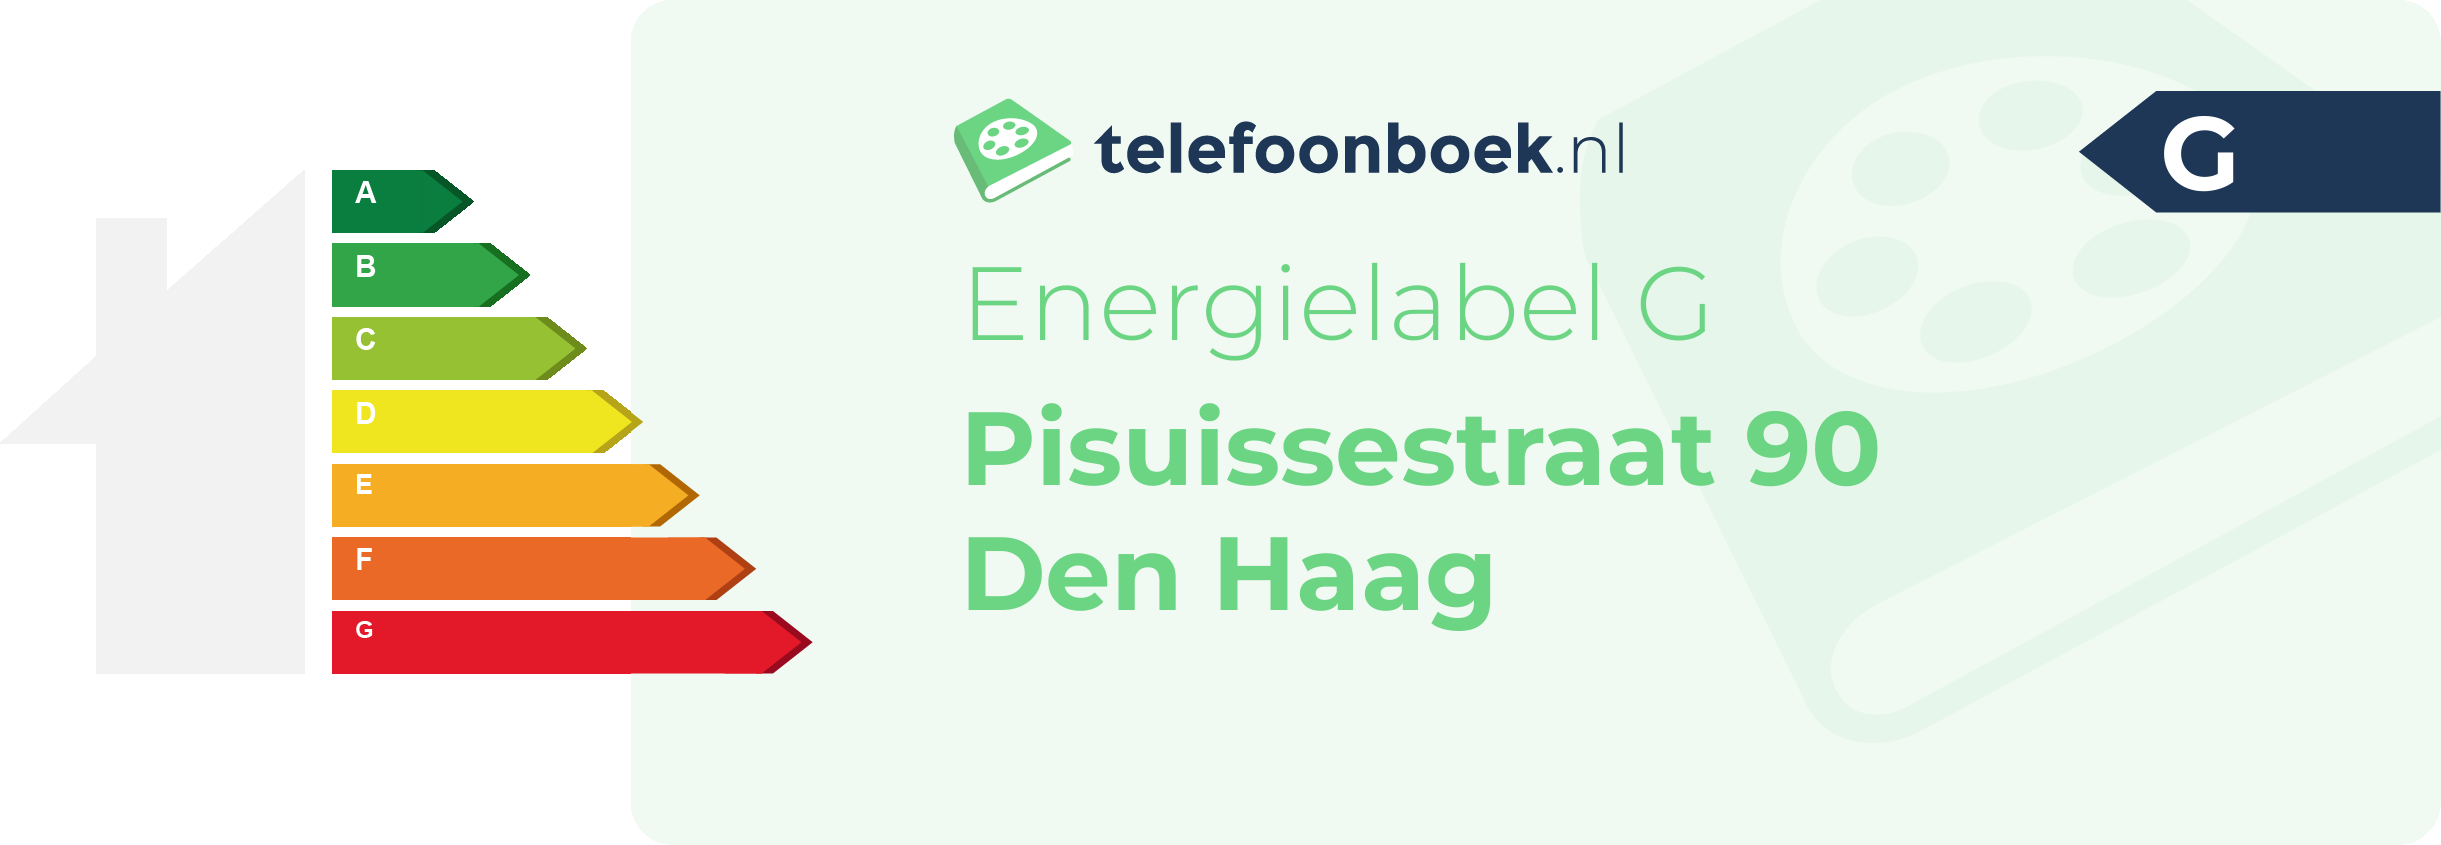 Energielabel Pisuissestraat 90 Den Haag